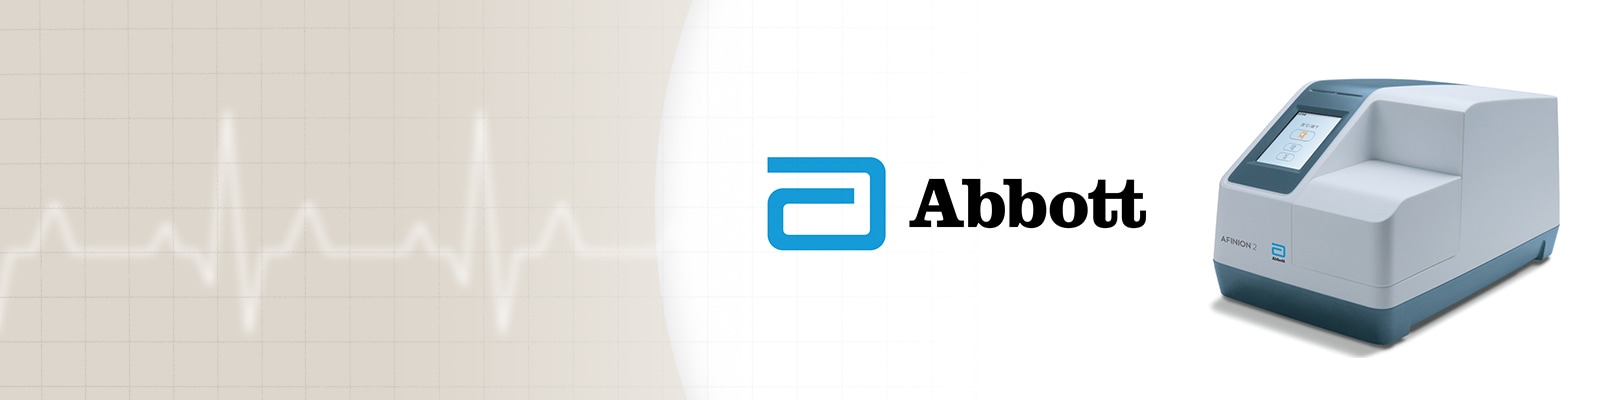 Abbott Afinion™ products - Henry Schein Medical